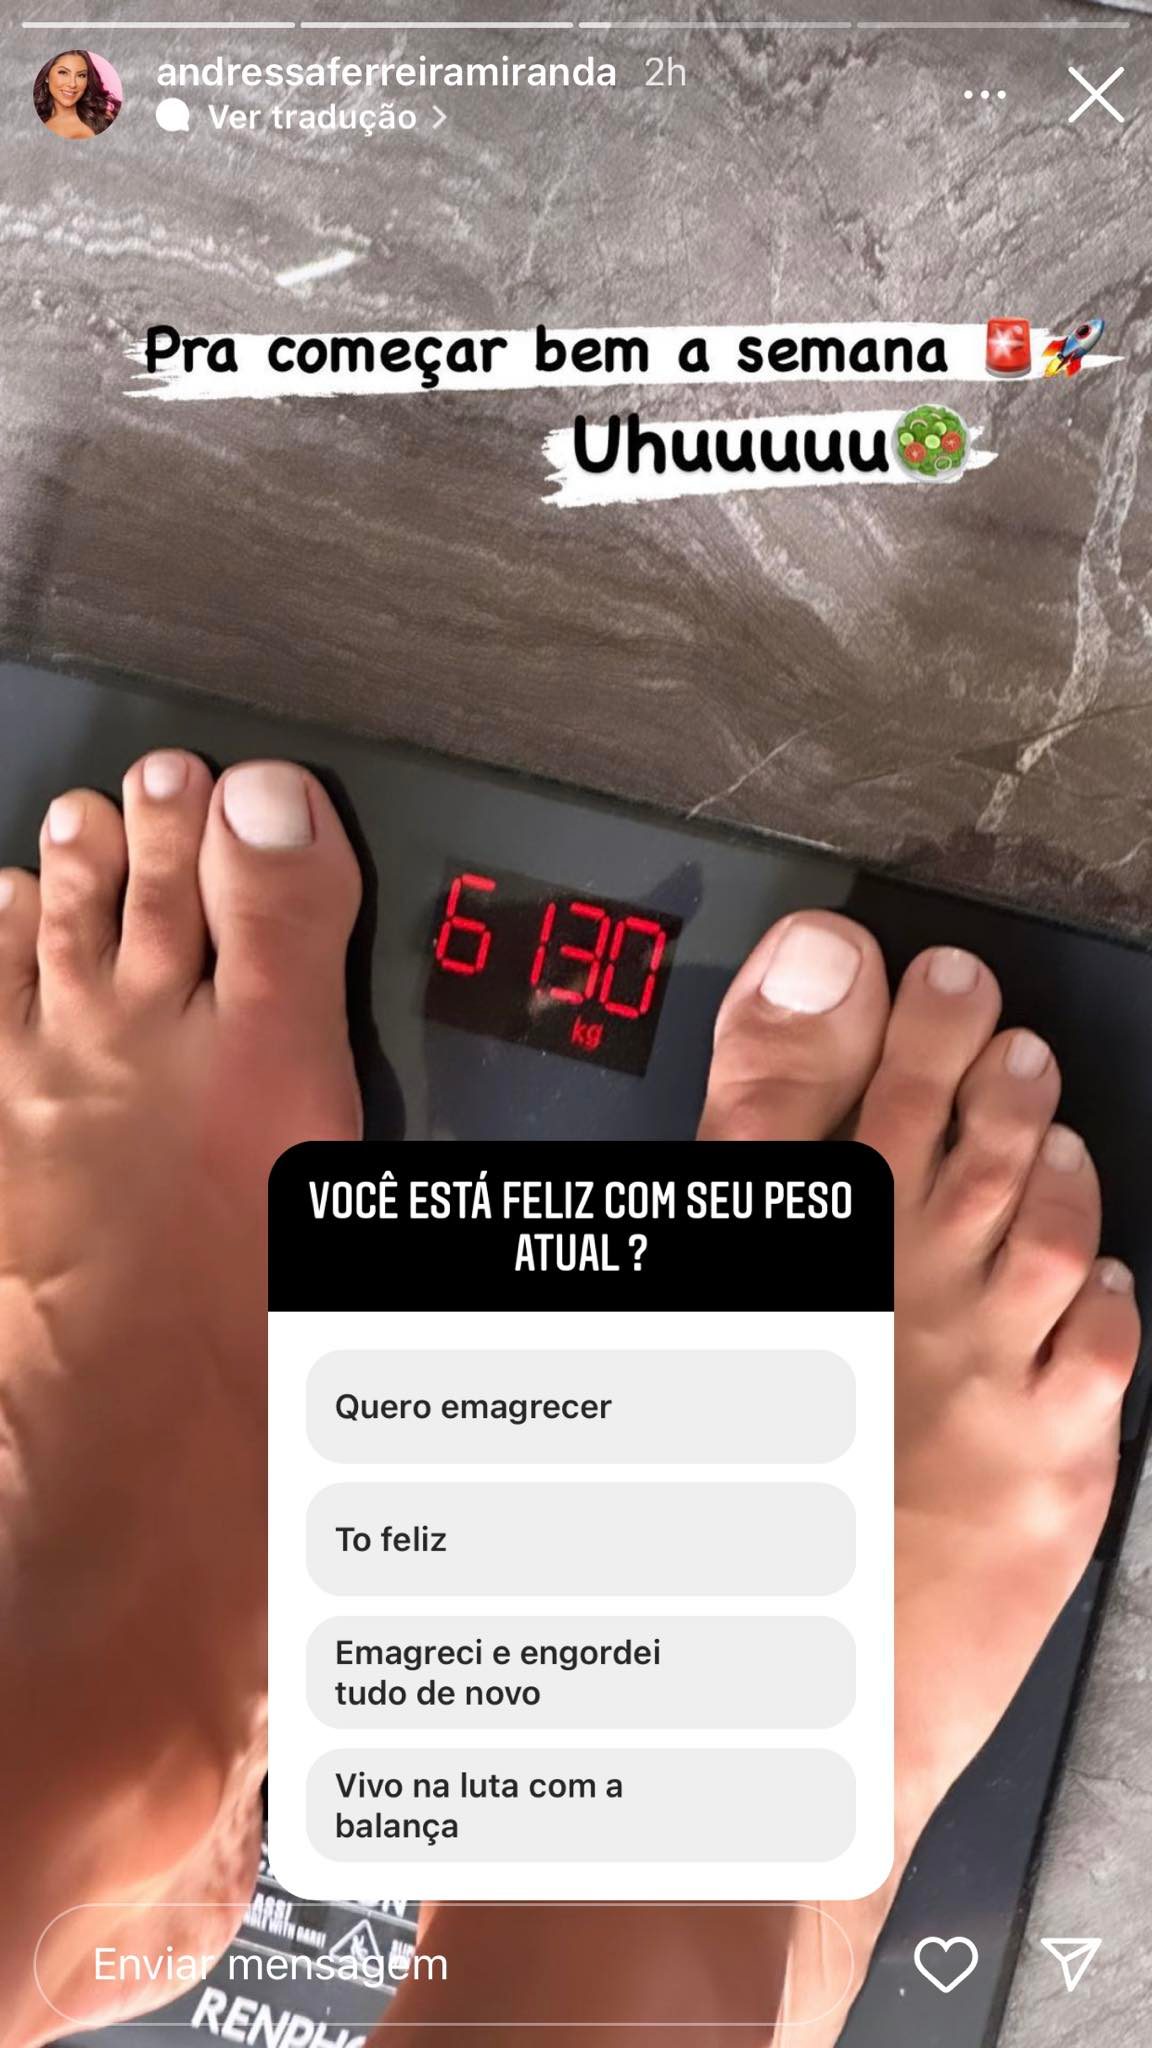 Andressa Miranda mostra foto da balança para revelar qual é o seu peso